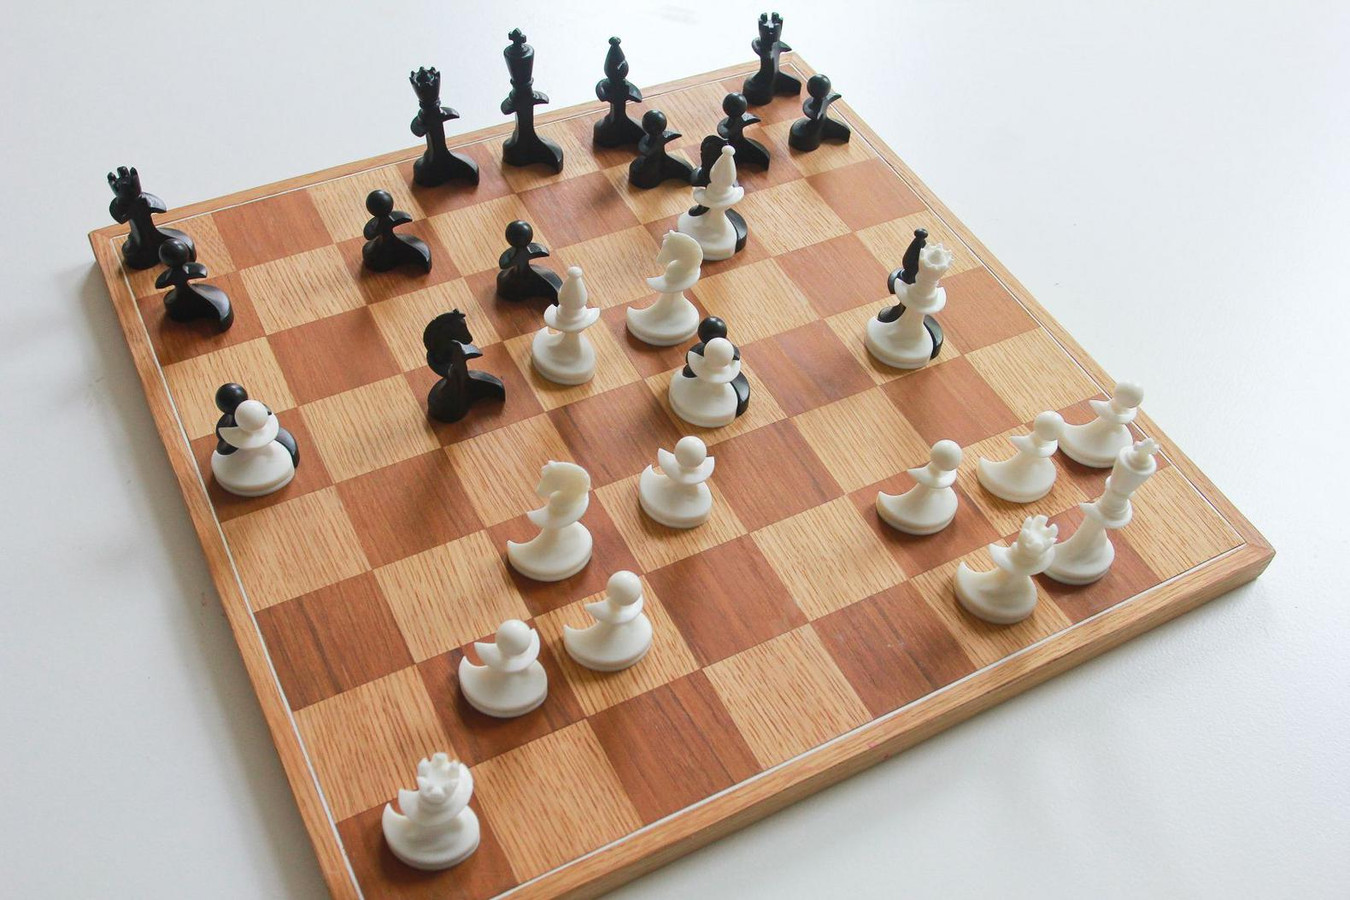 Uitgebreid getuige binding Haagse kunstenaar verzint nieuw schaakspel | Foto | AD.nl